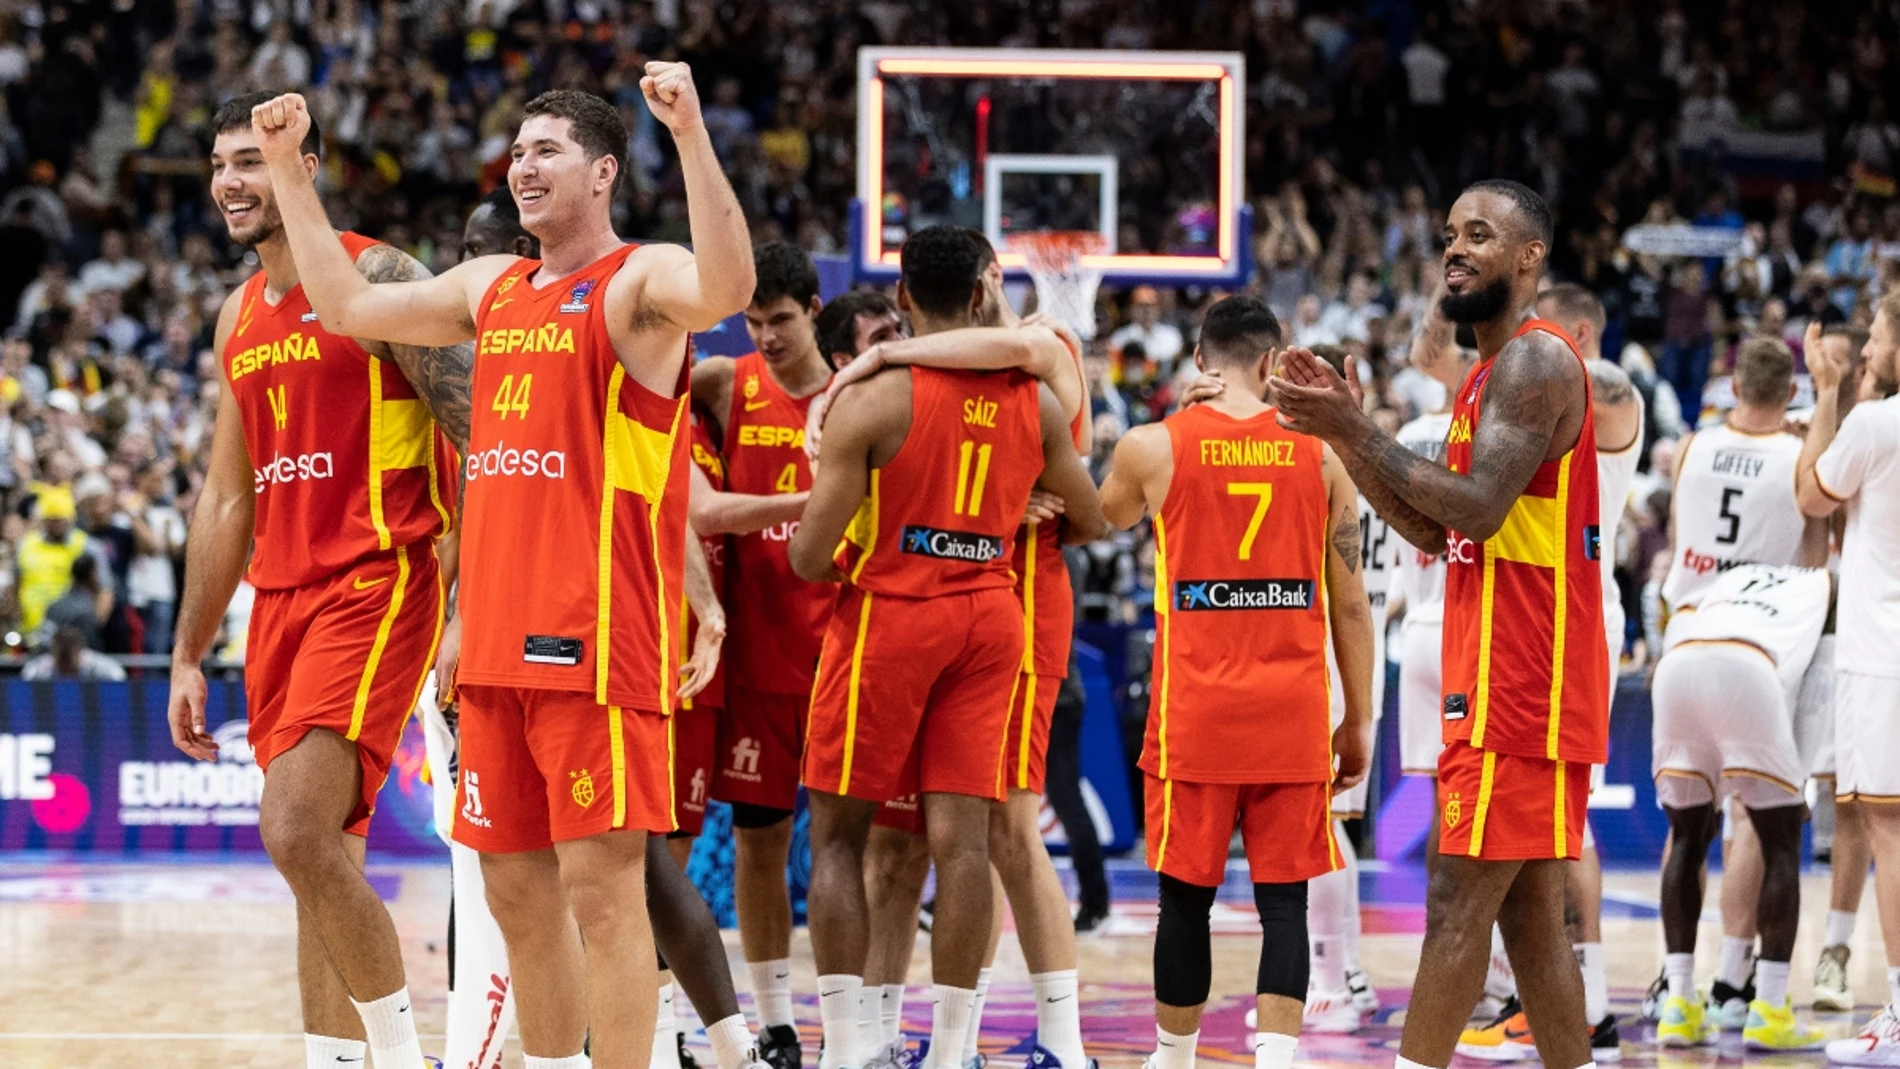 Hasta la FIBA se rinde a la Selección: "El baloncesto es deporte...donde siempre España"